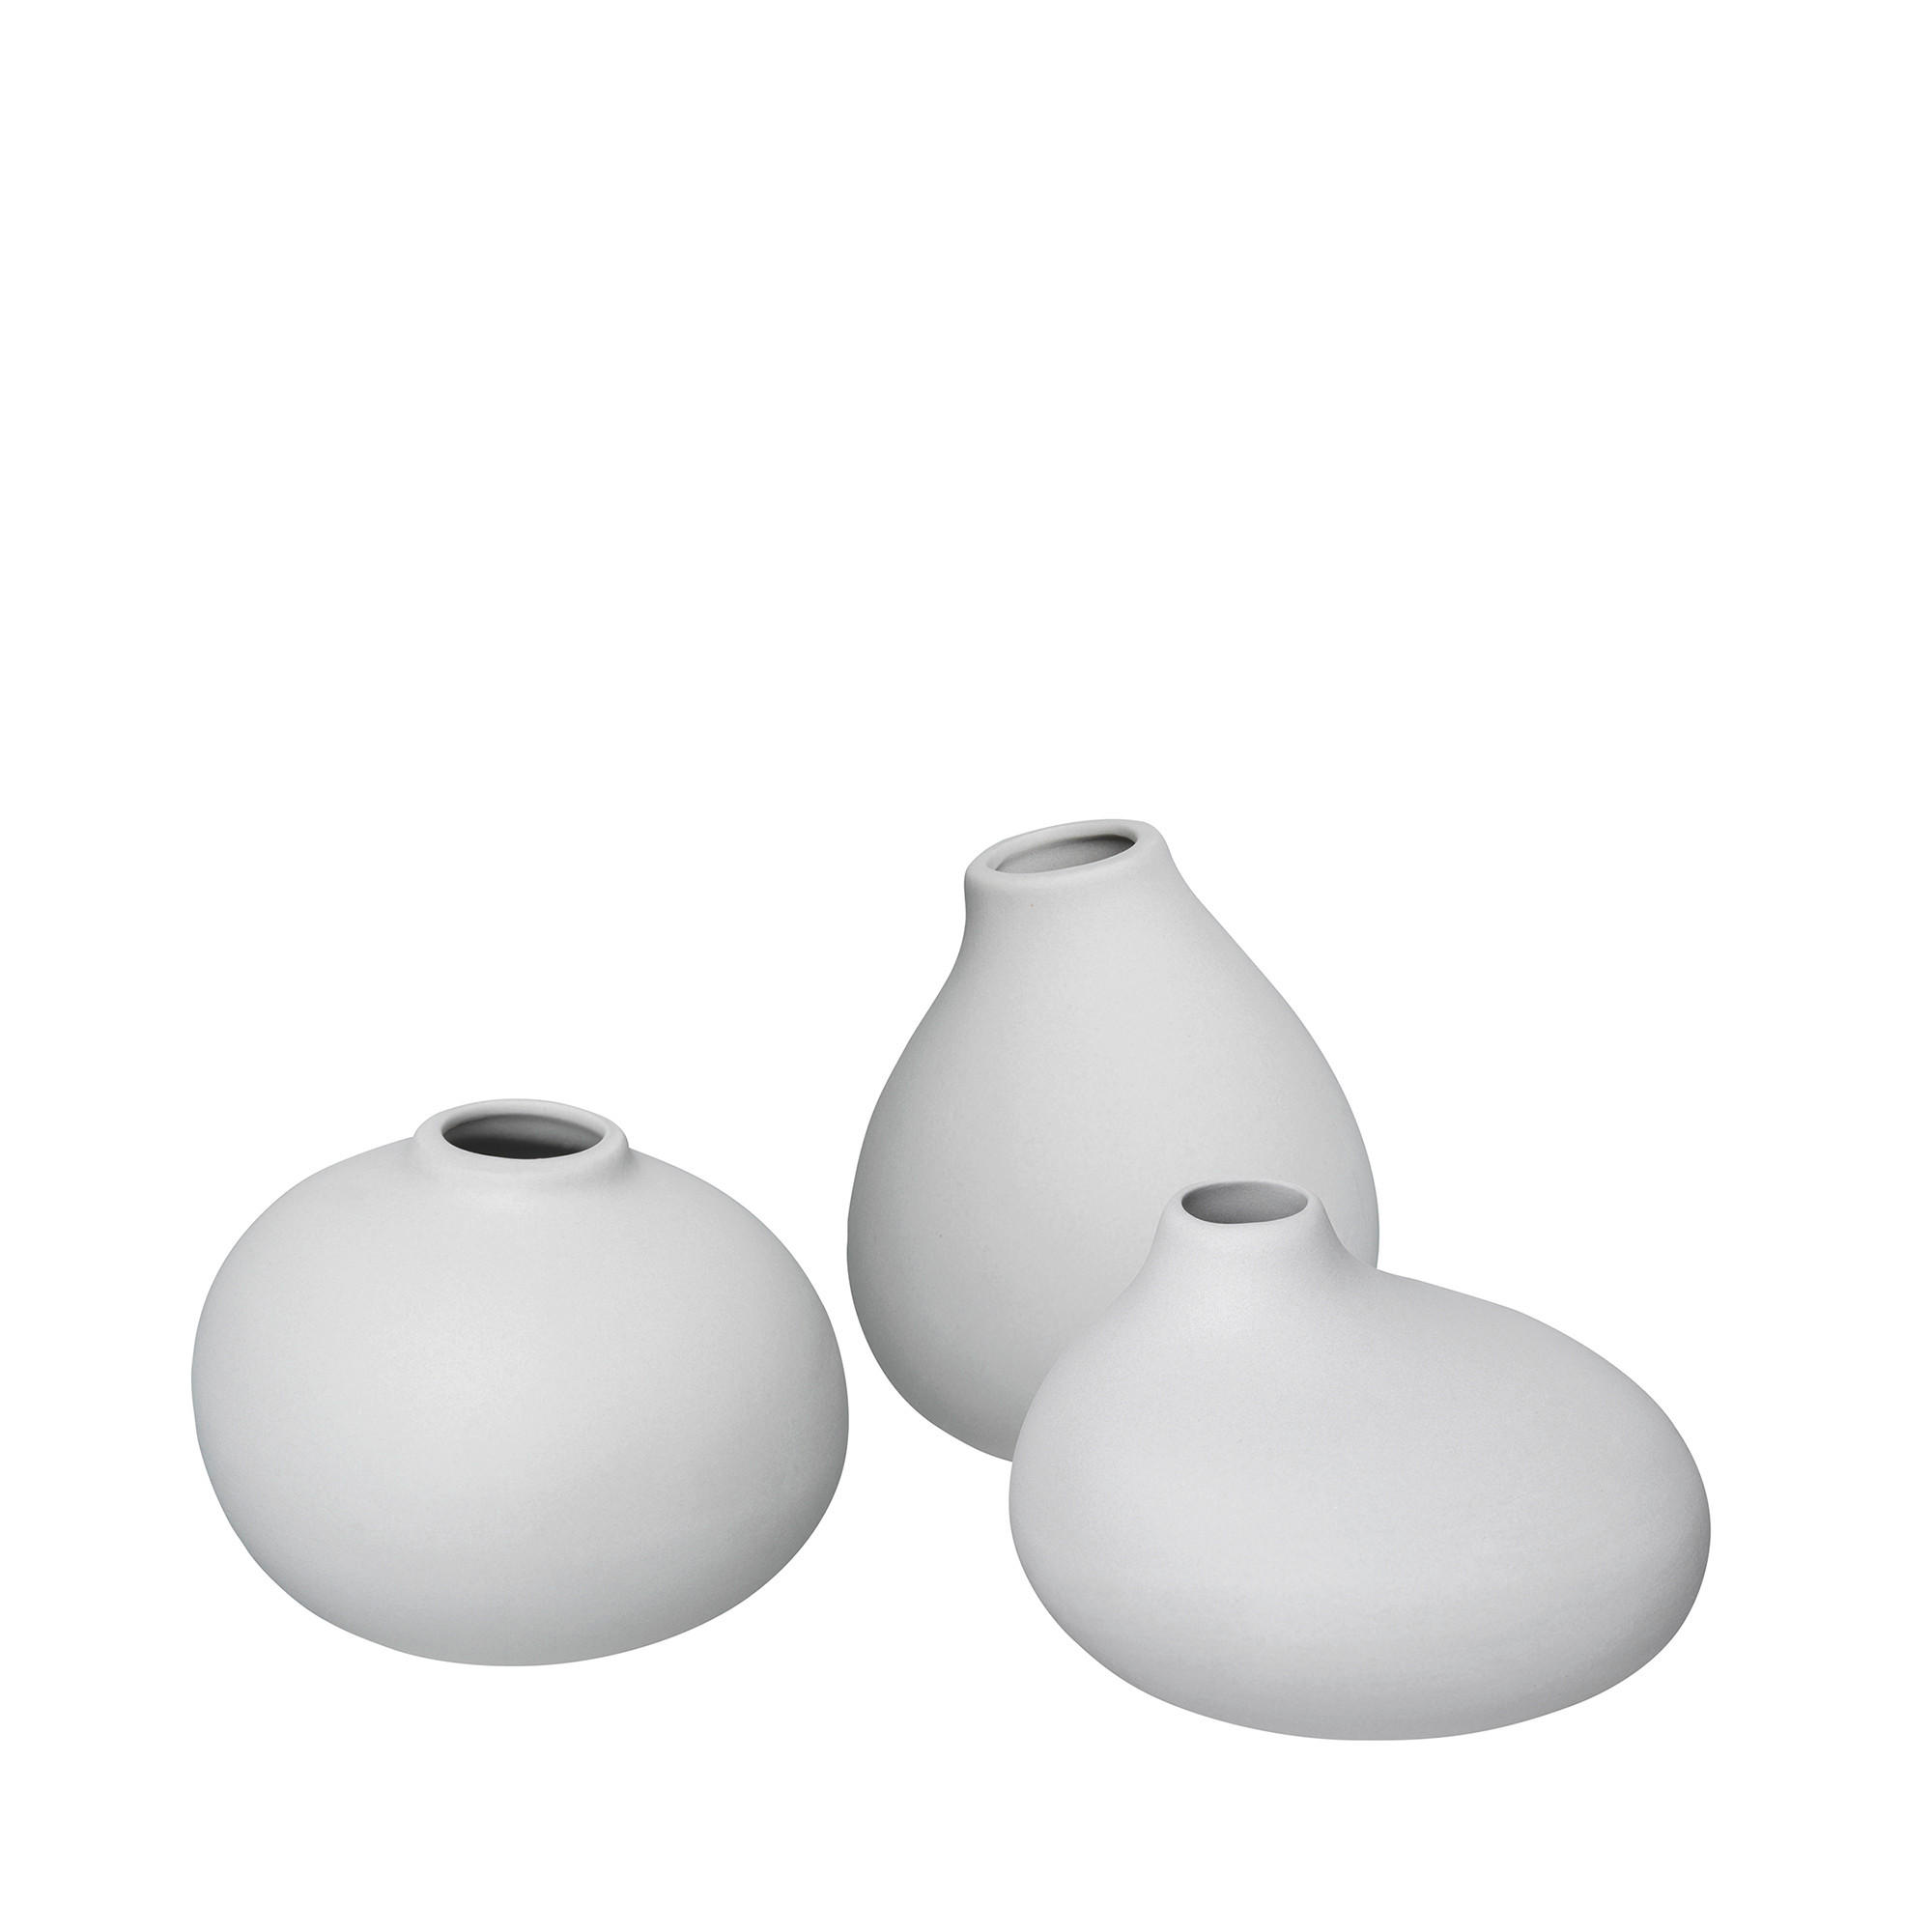 VASE 6,5 cm  - Hellgrau, Design, Keramik (6,5/9/7cm) - Blomus